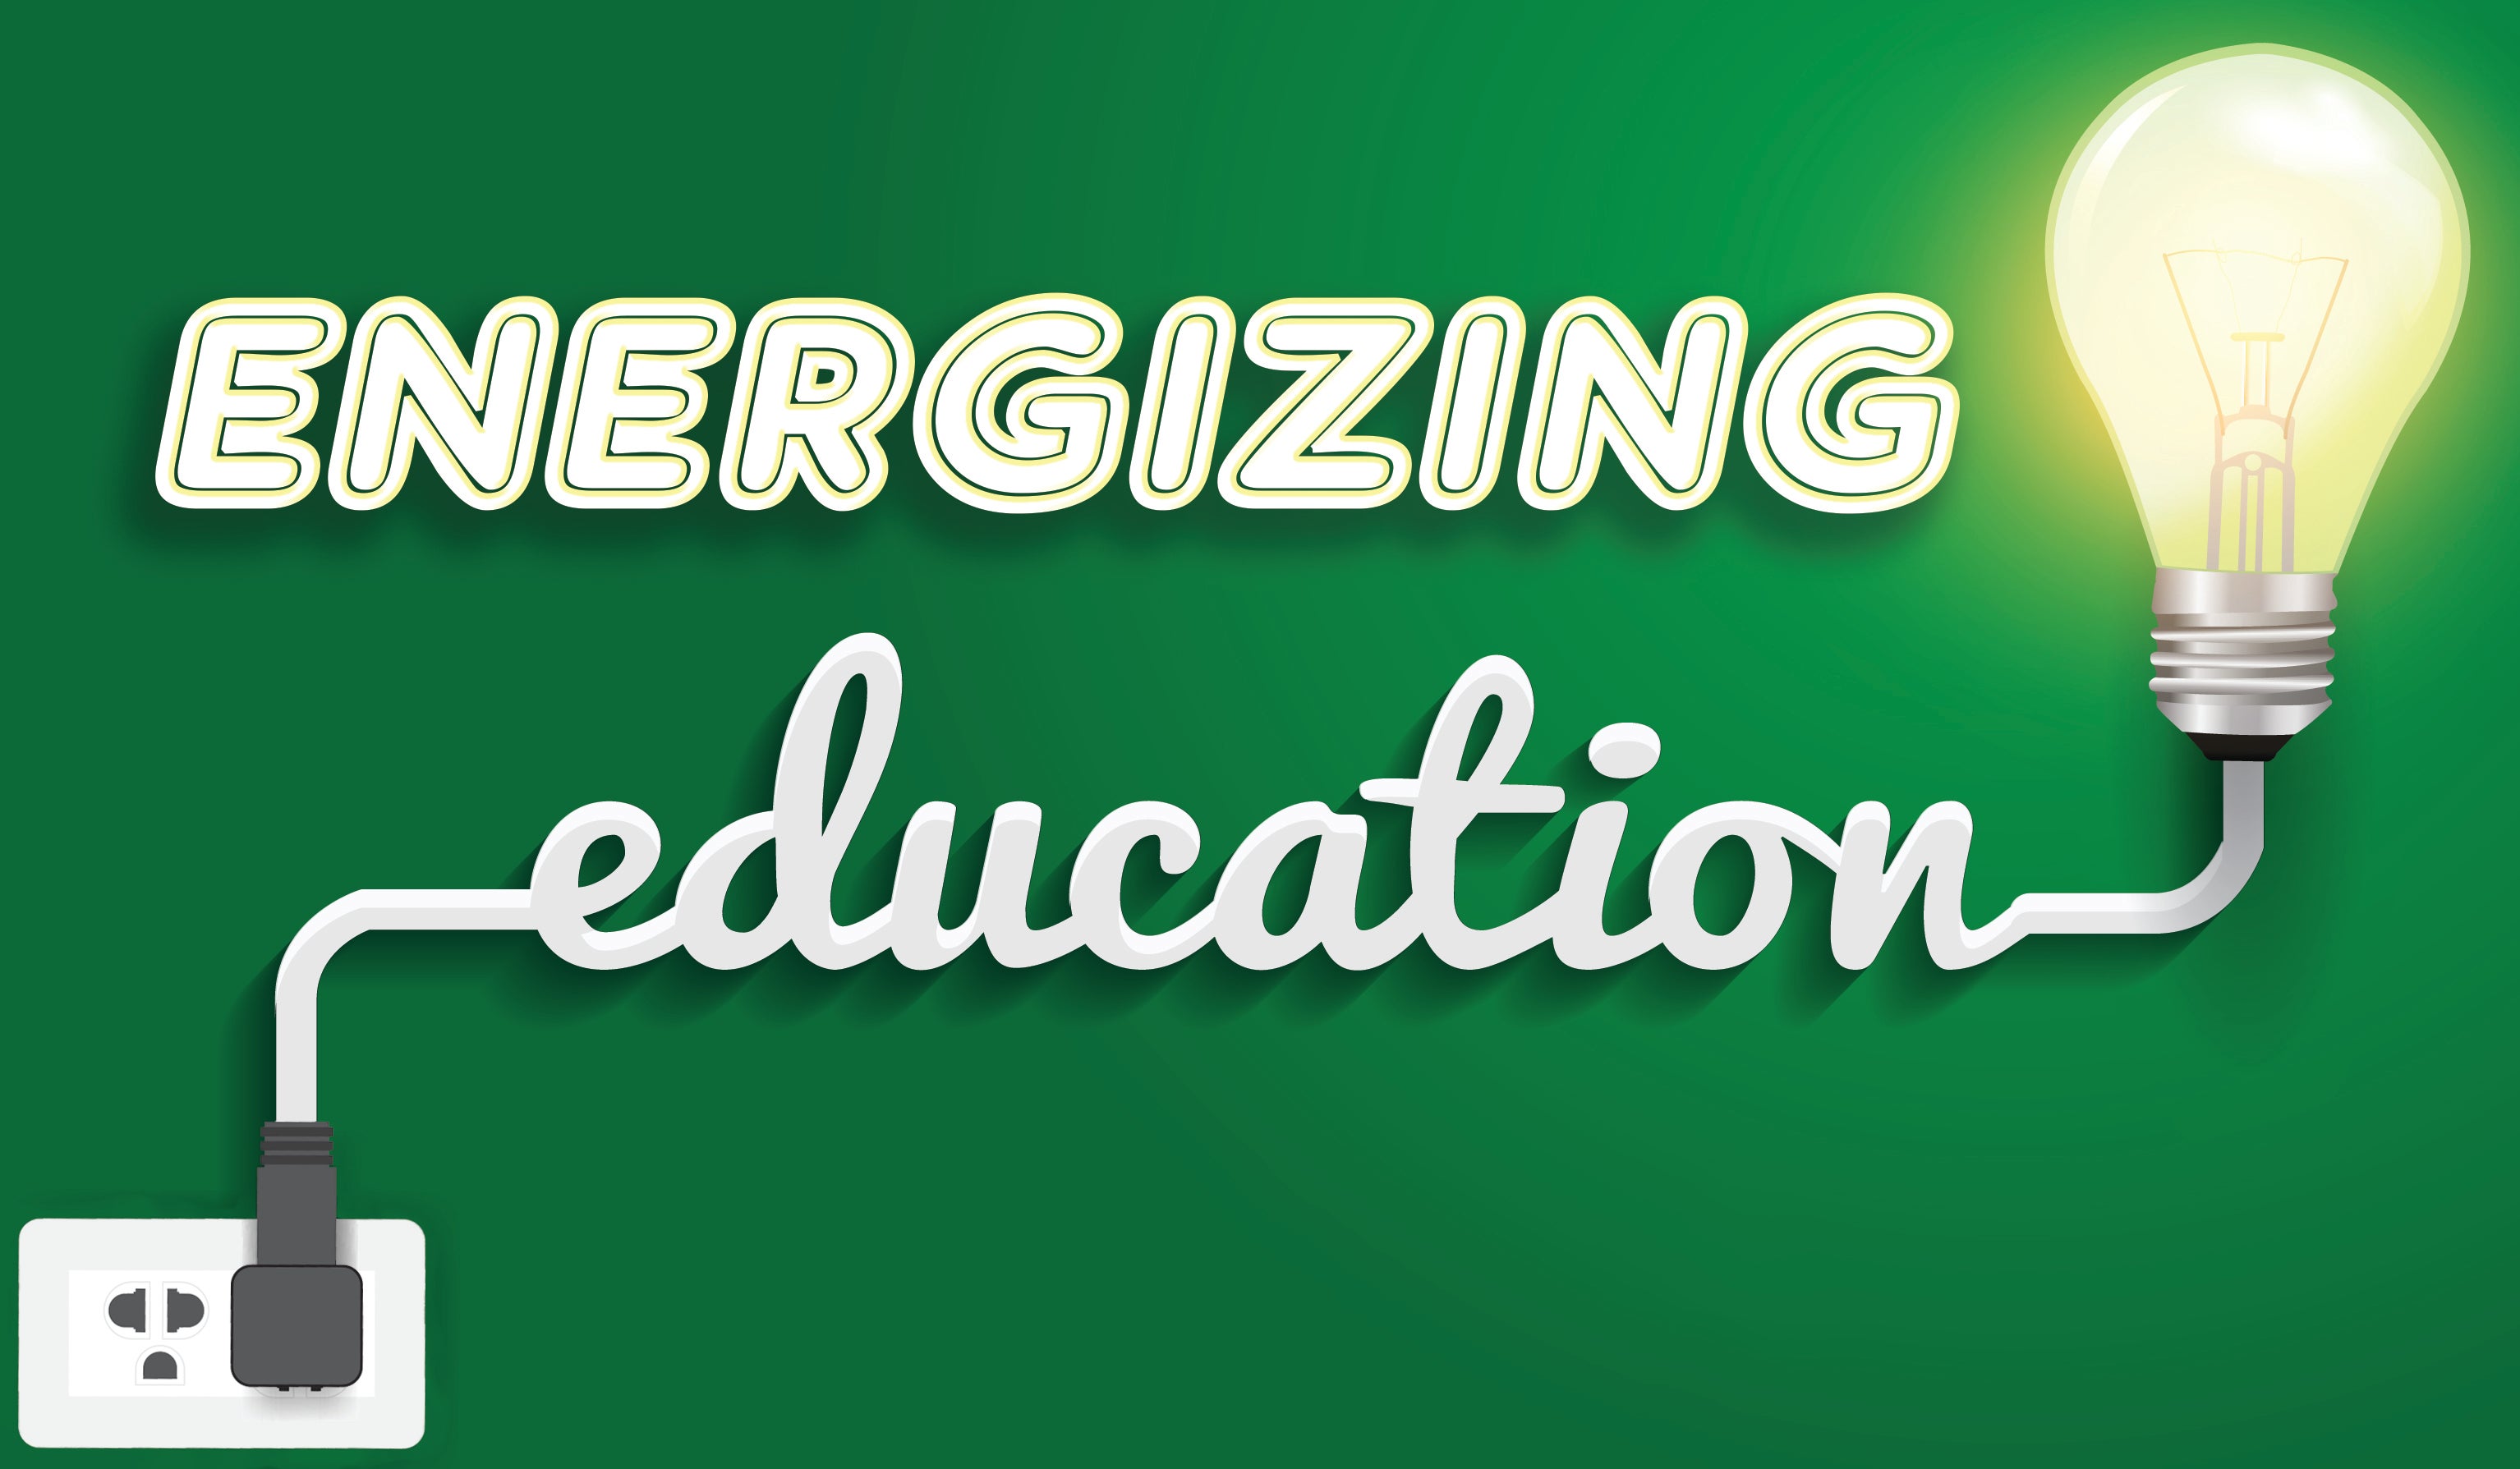 Energizing education